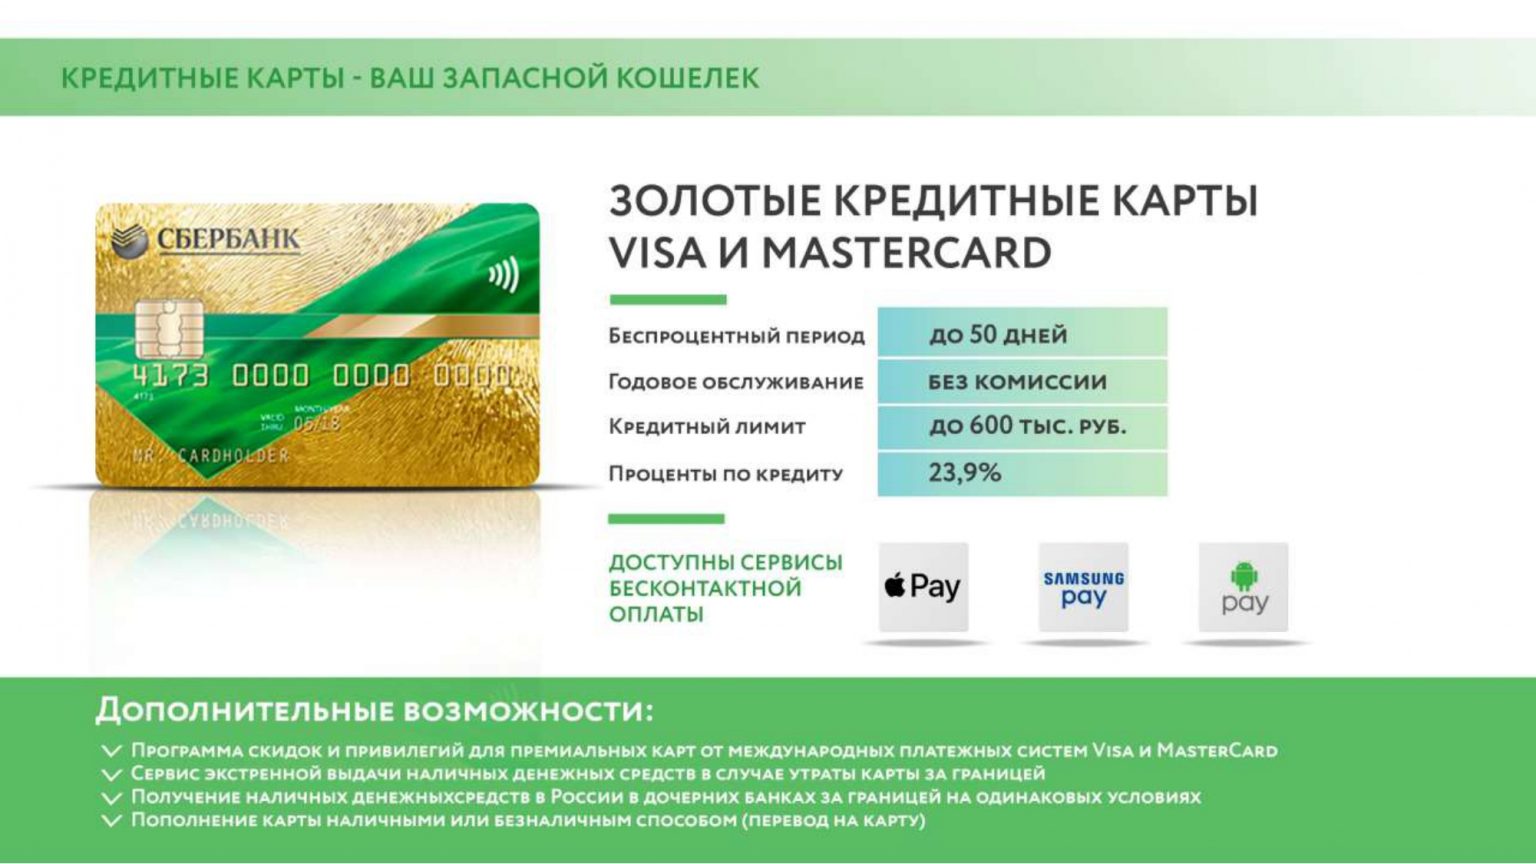 Займ 15000 рублей на карту сбербанка круглосуточно